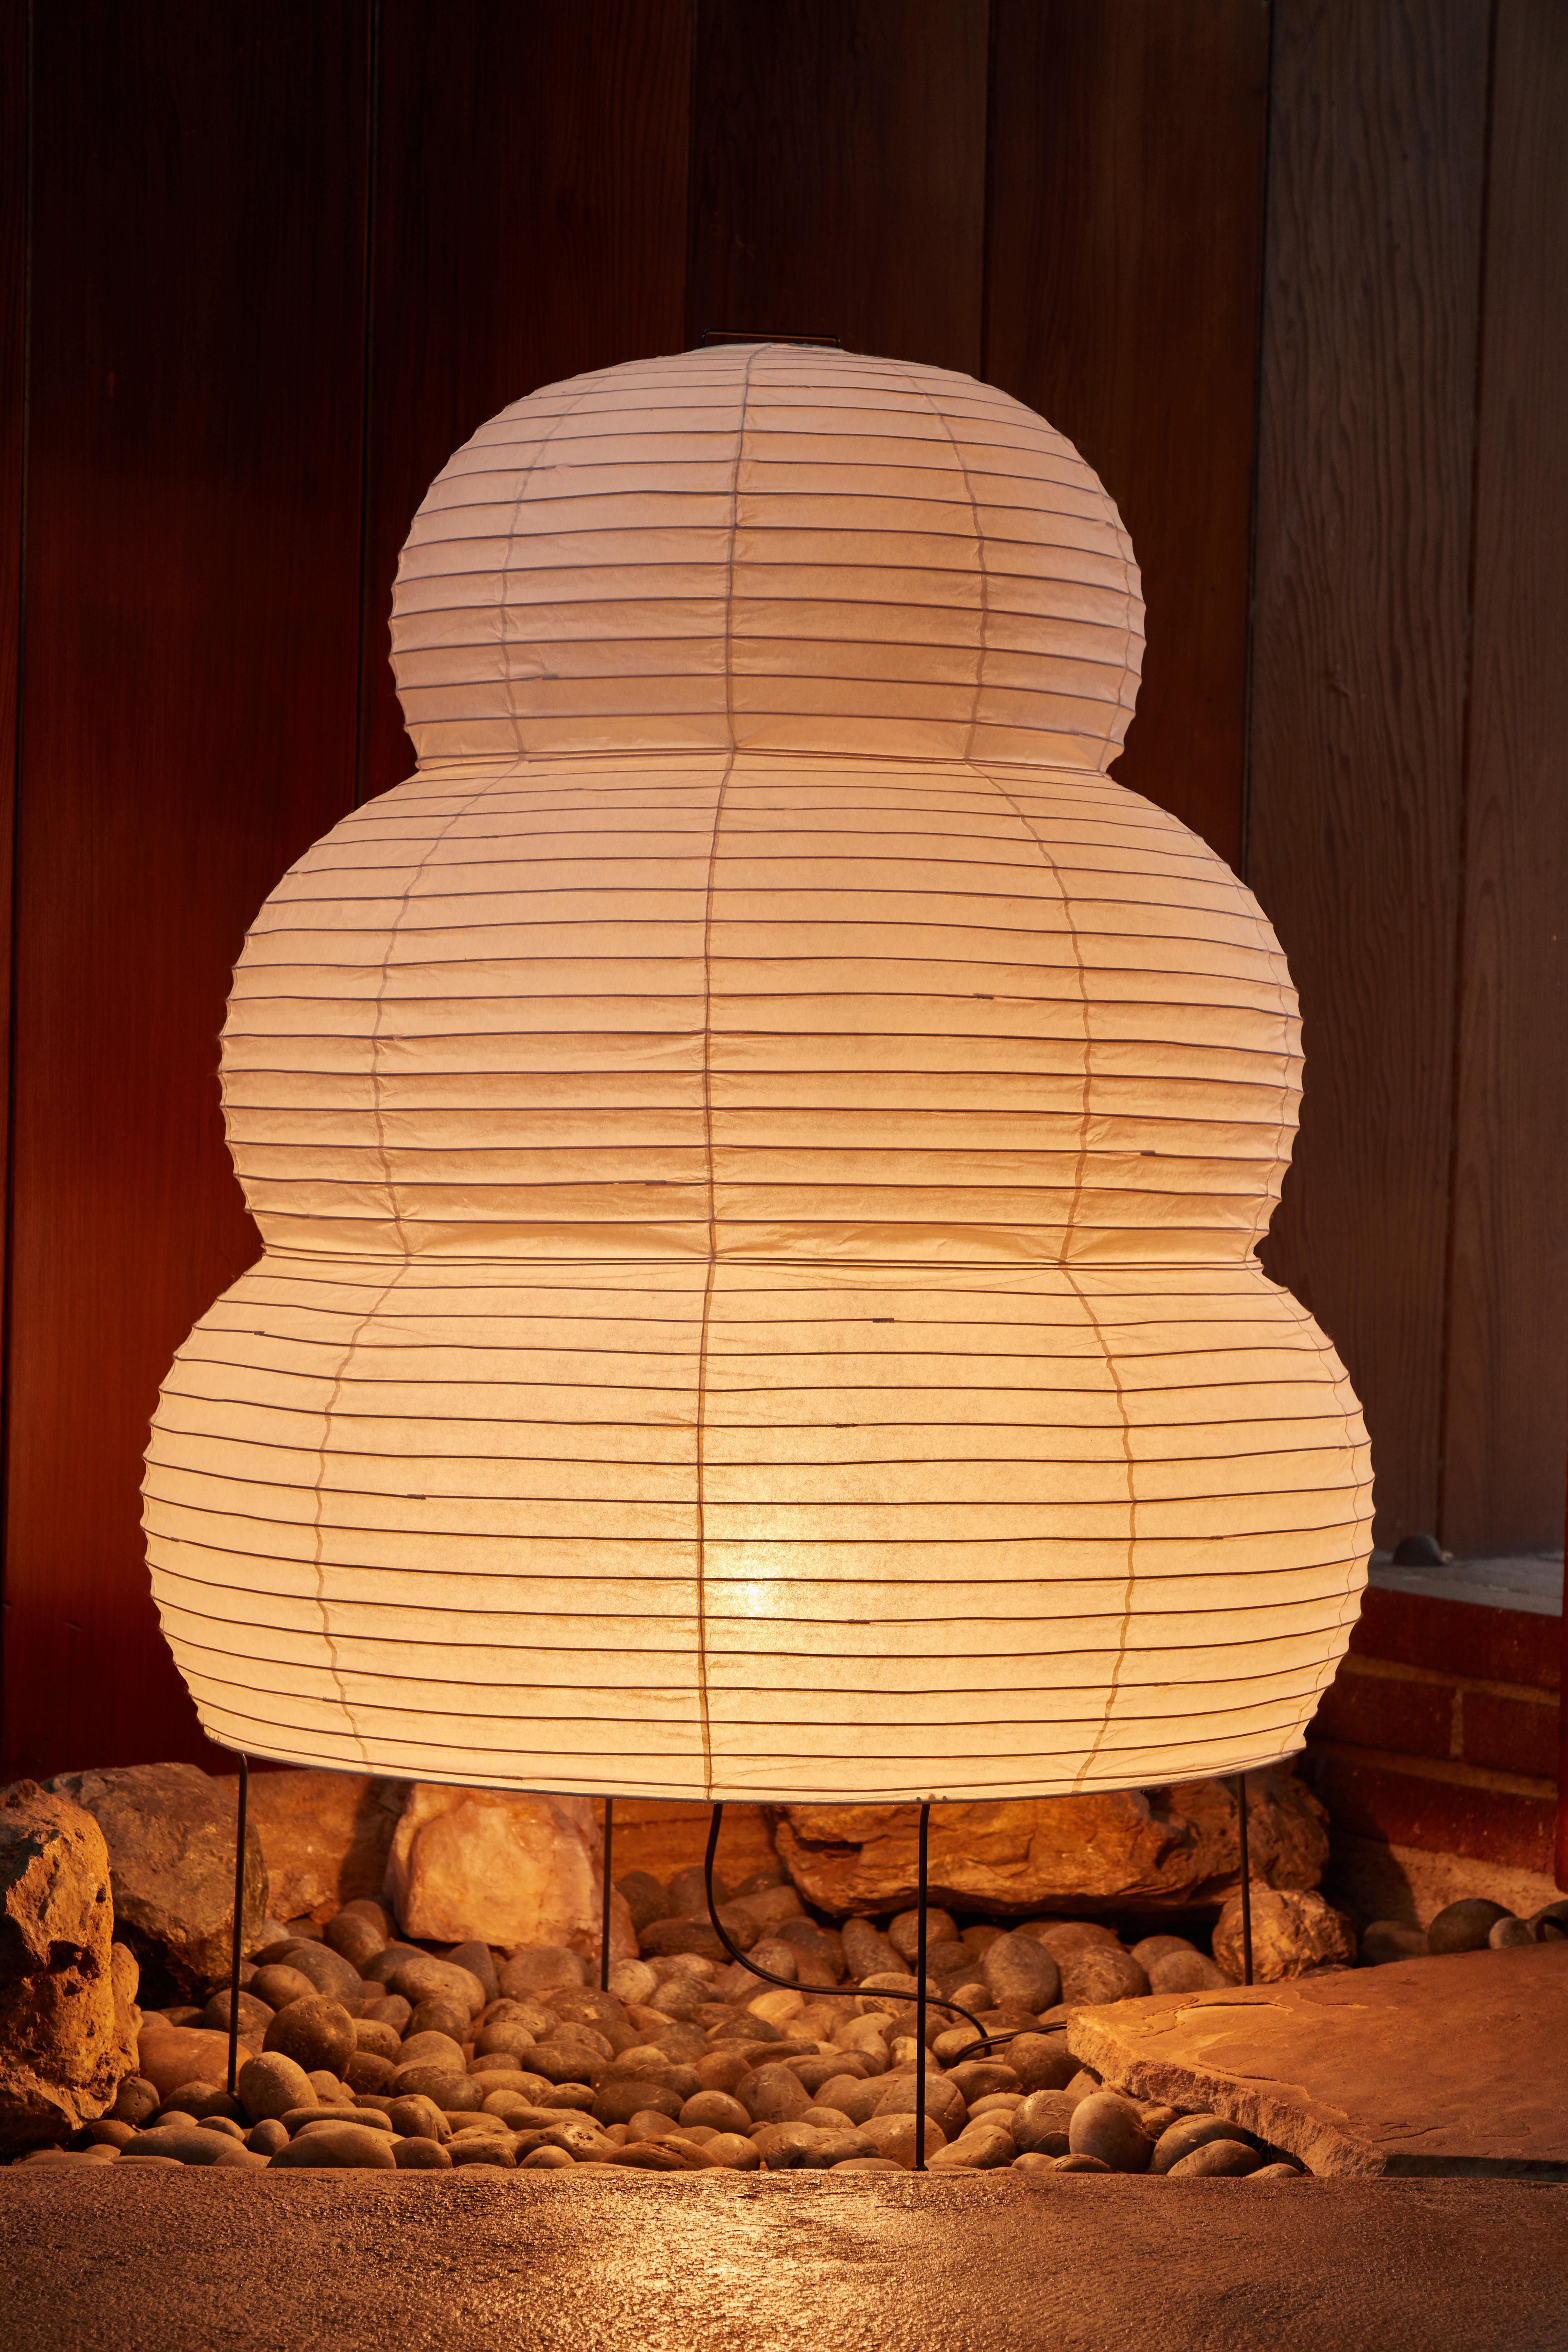 Monumentale Stehleuchte Akari 25N von Isamu Noguchi. Der Schirm ist aus handgeschöpftem Washi-Papier und Bambusrippen mit dem Stempel des Herstellers Noguchi Akari gefertigt. Die Akari-Lichtskulpturen von Isamu Noguchi gelten als Ikonen des modernen